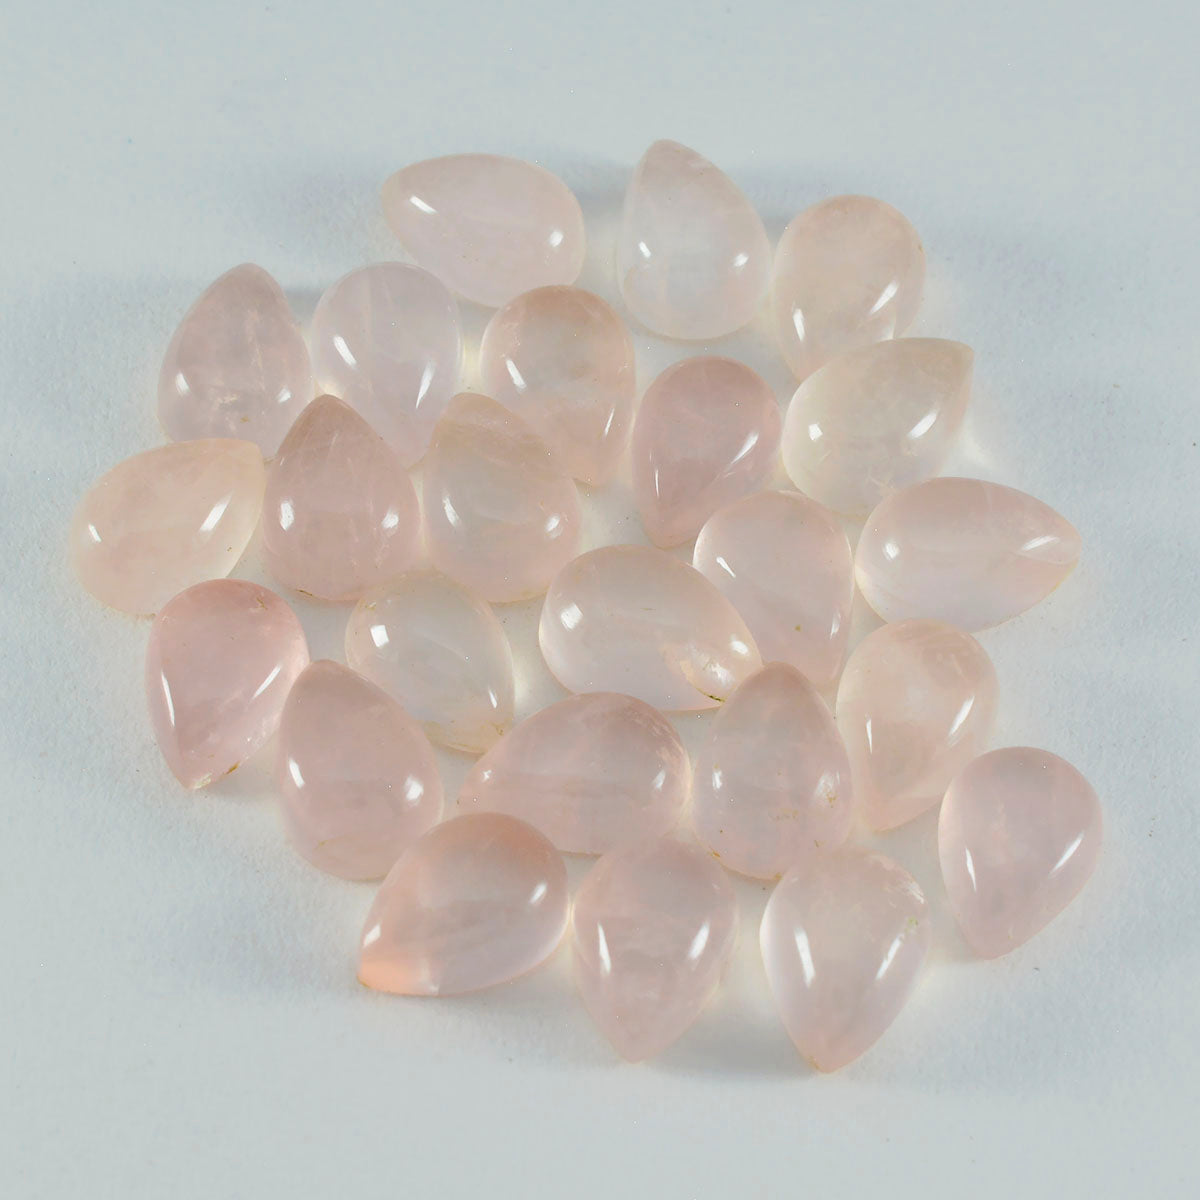 Riyogems 1 pc cabochon de quartz rose rose 5x7 mm en forme de poire qualité impressionnante gemme en vrac